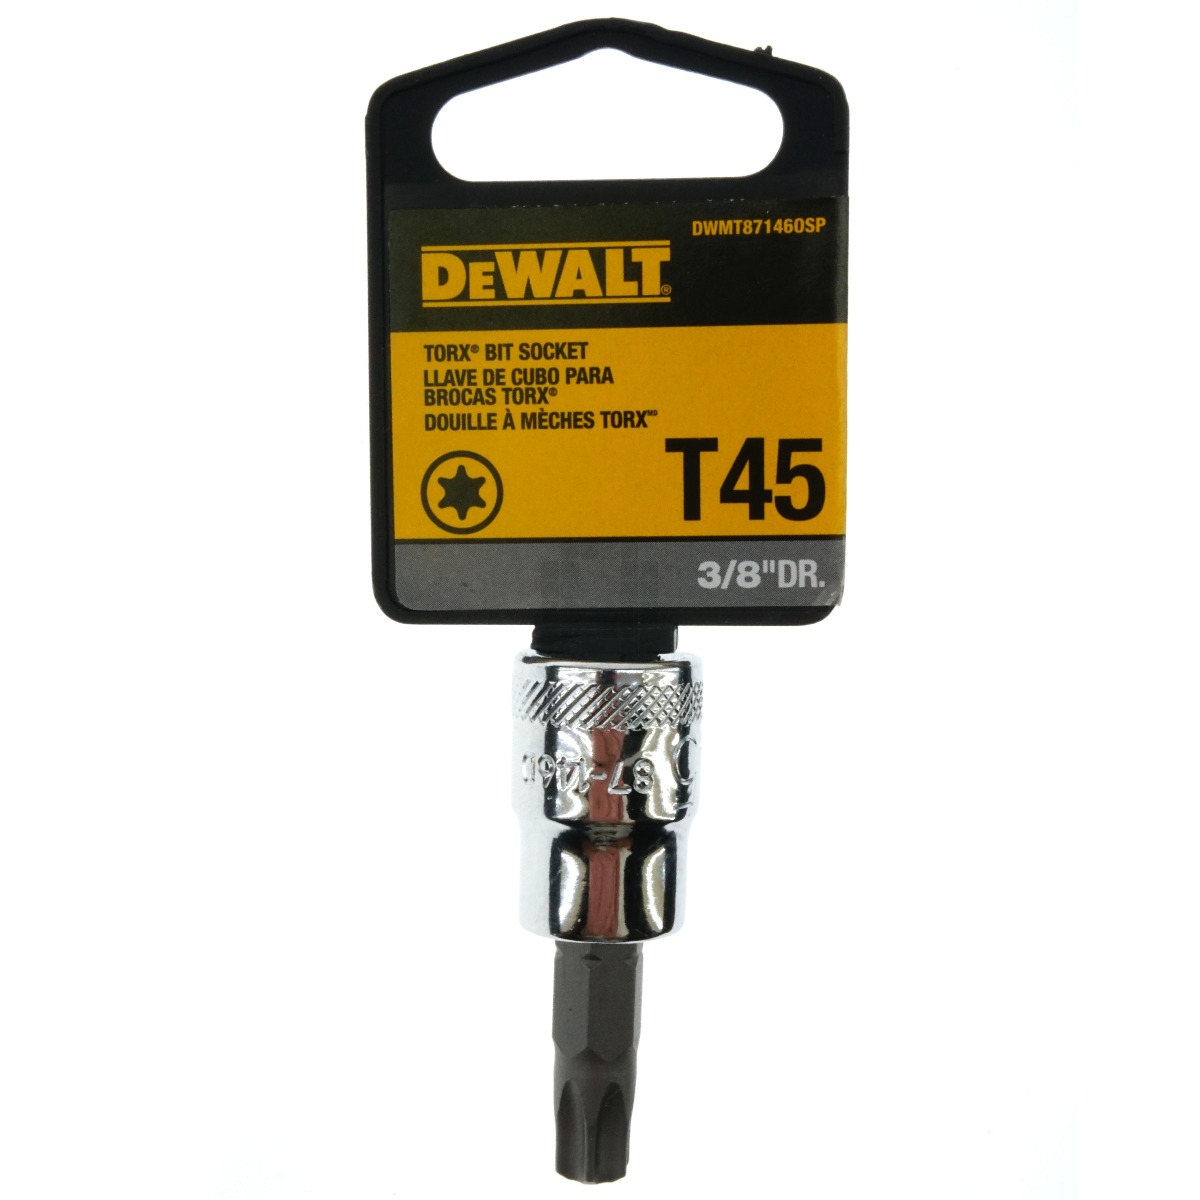 Dewalt DWMT87146OSP T45 Torx Bit Socket, 3/8" Drive, 87-146D